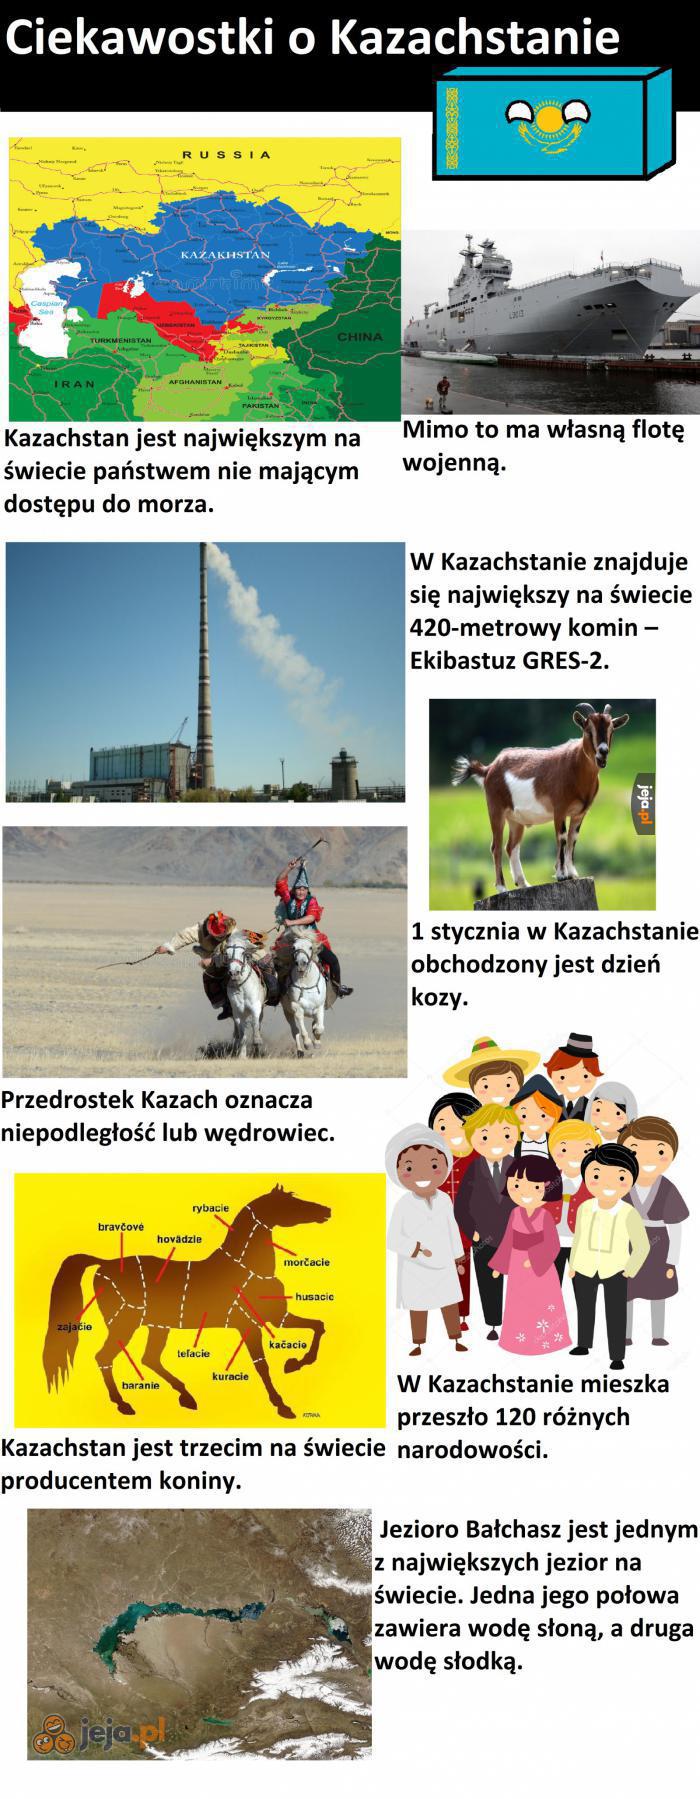 Ciekawostki o Kazachstanie